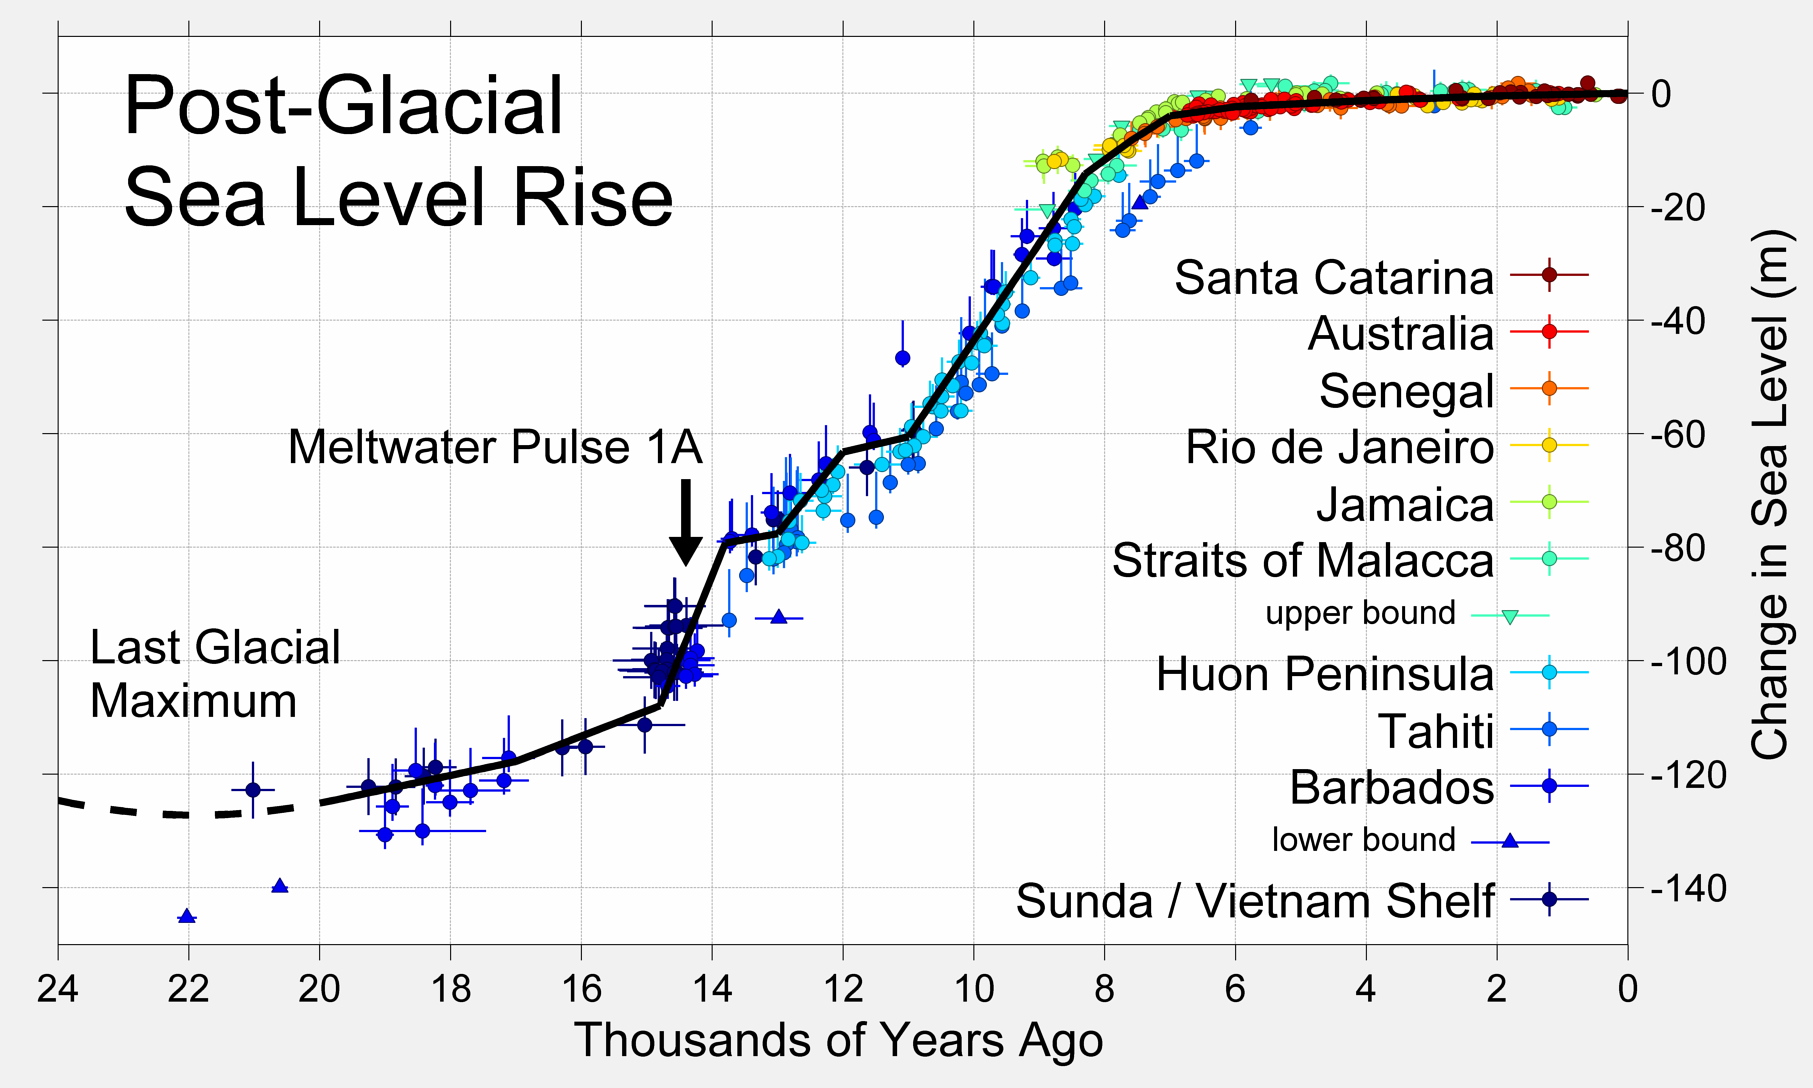 在末次冰盛期（Last Glacial Maximum）之後的幾千年裡，地球的海平面急劇上升。